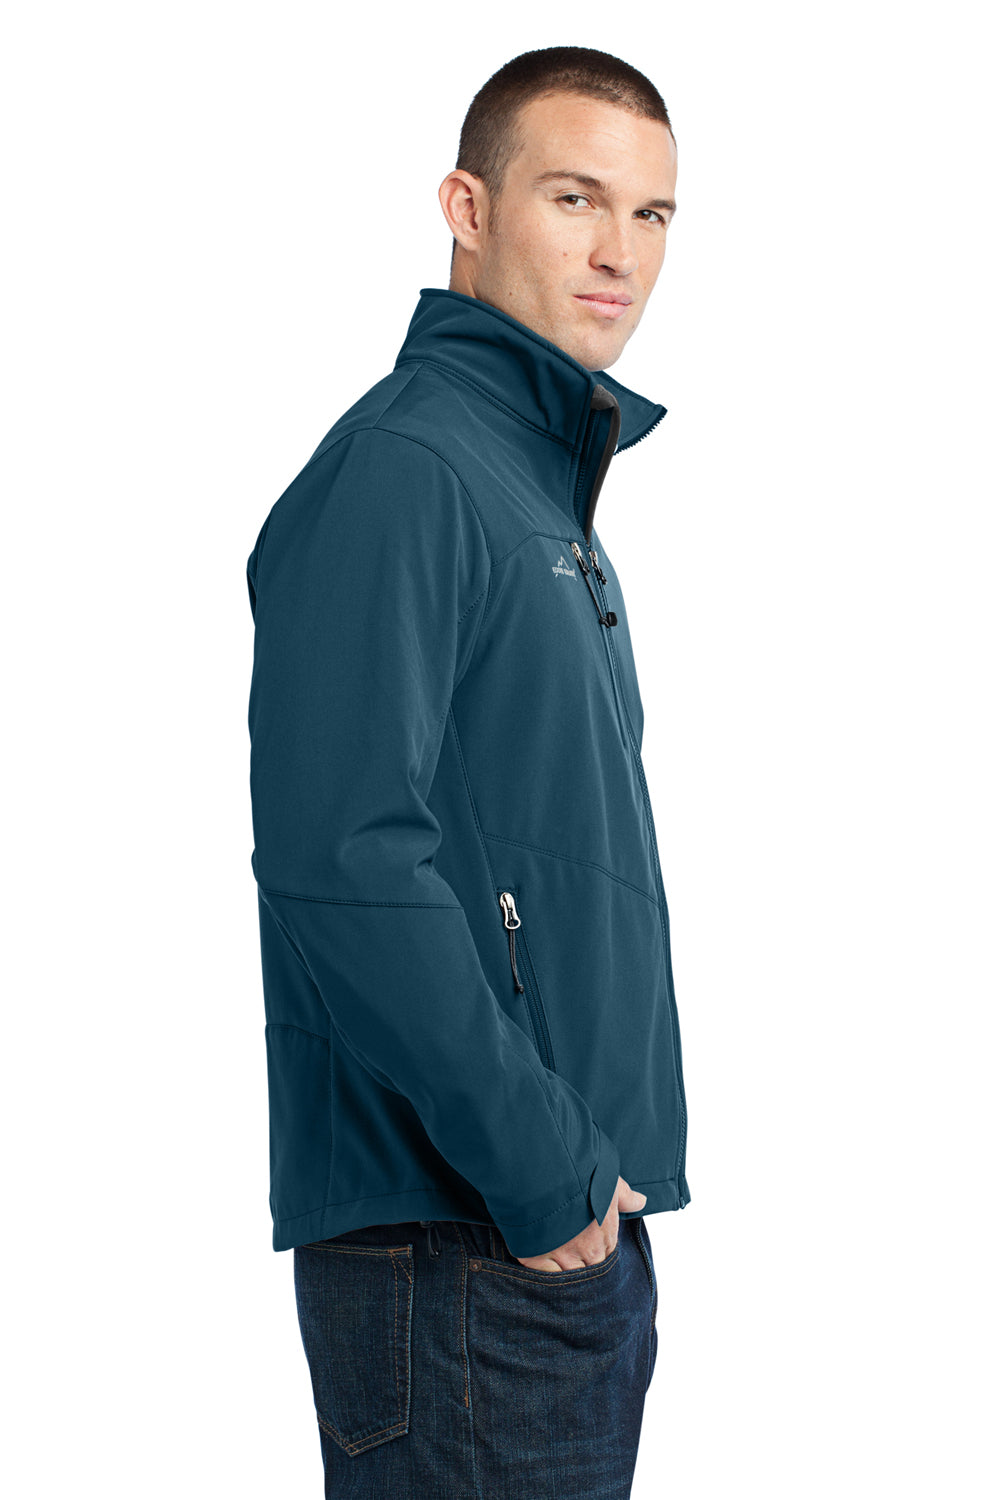 Eddie Bauer EB530 Mens Water Resistant Full Zip Jacket Dark Adriatic Blue Model Side